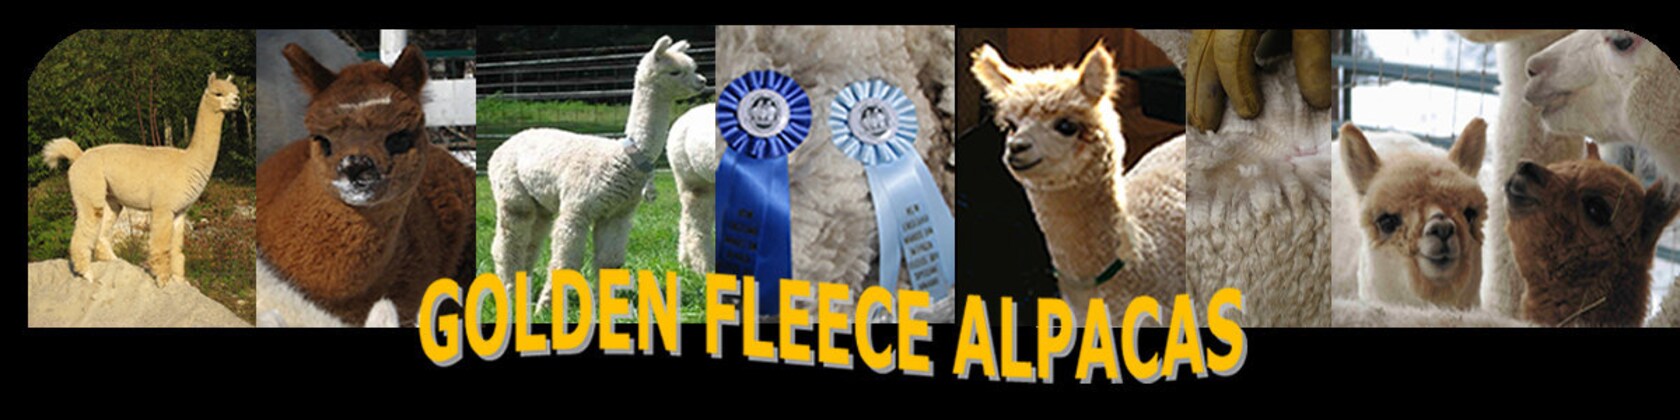 Golden Fleece - Yarn